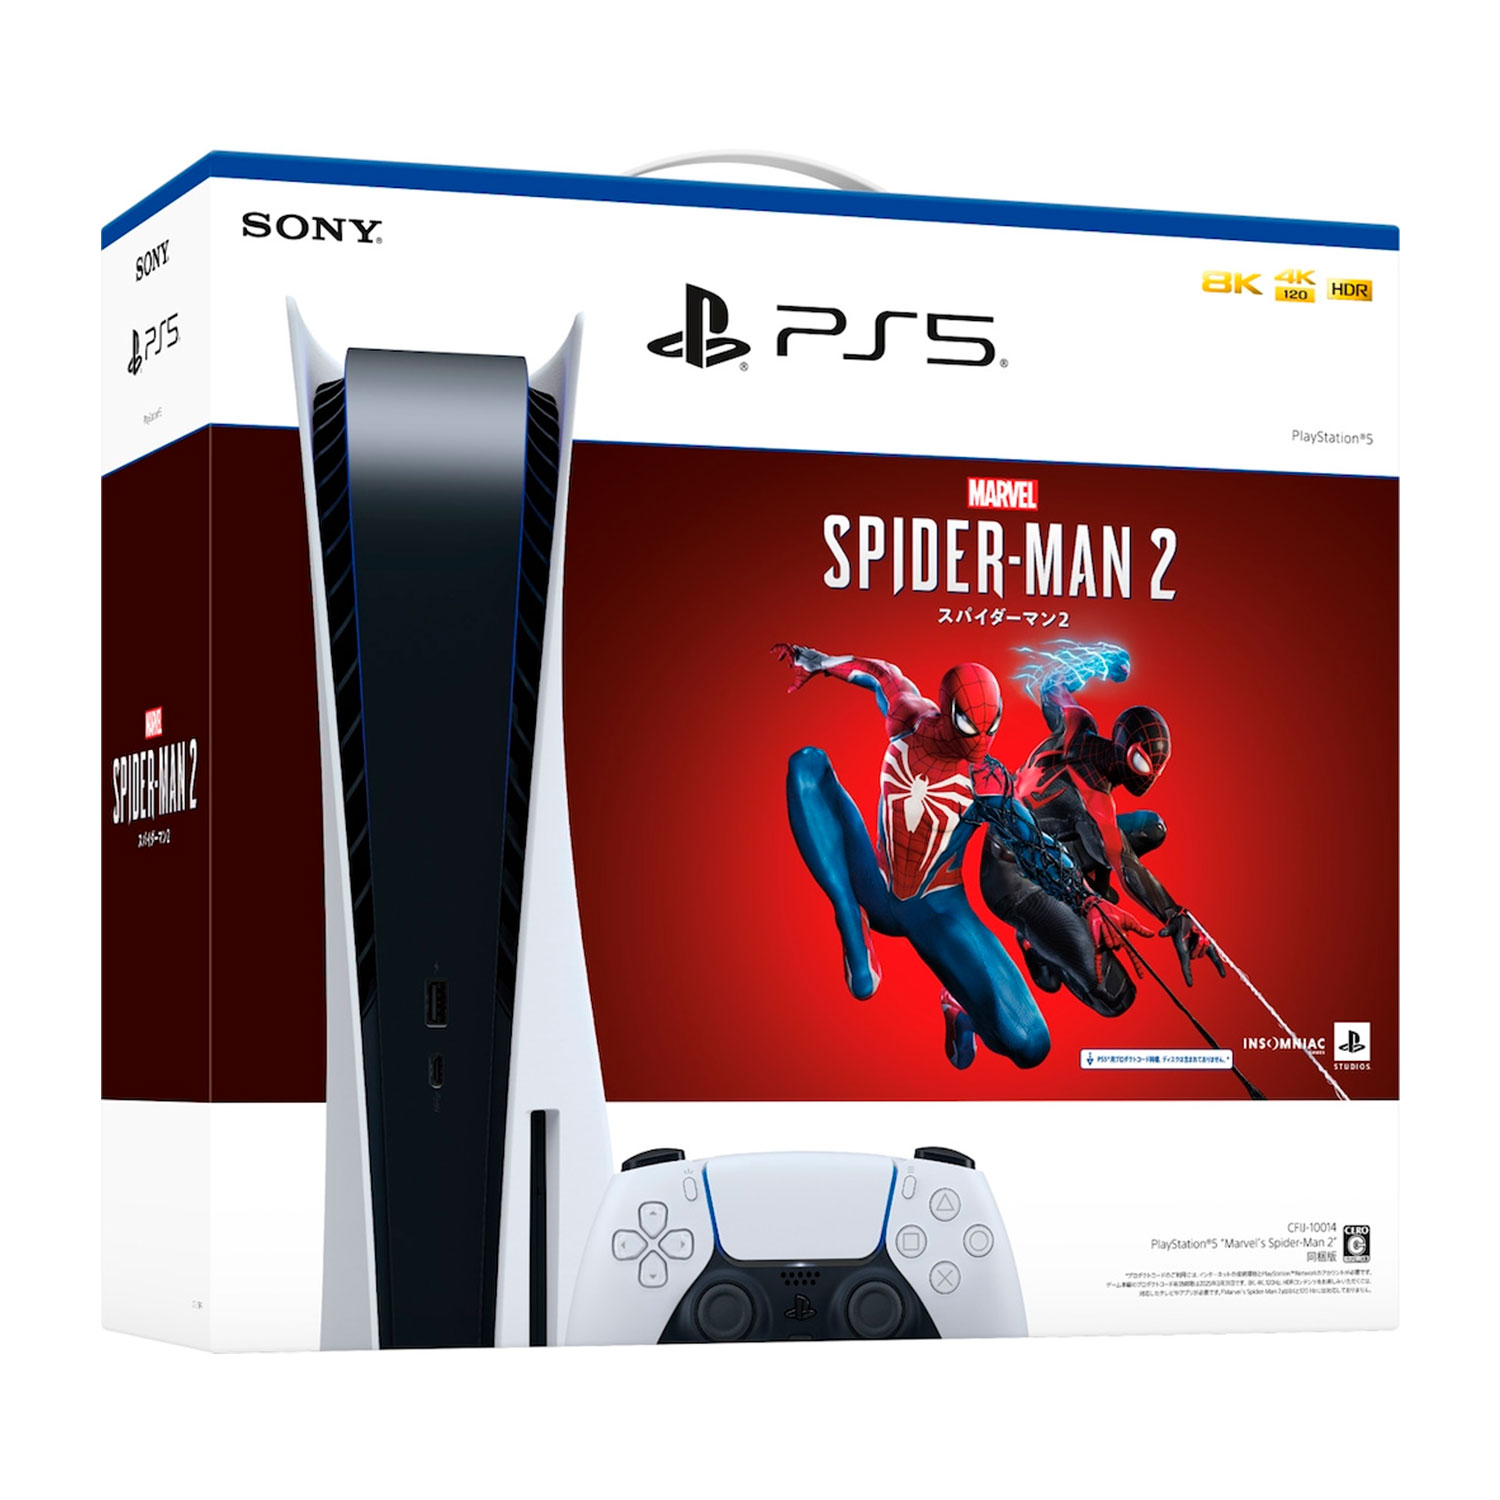 Console Sony PlayStation 5 Spider-Man 2 CFI-1200A 8K 825GB SSD Japão - (Caixa Danificada)